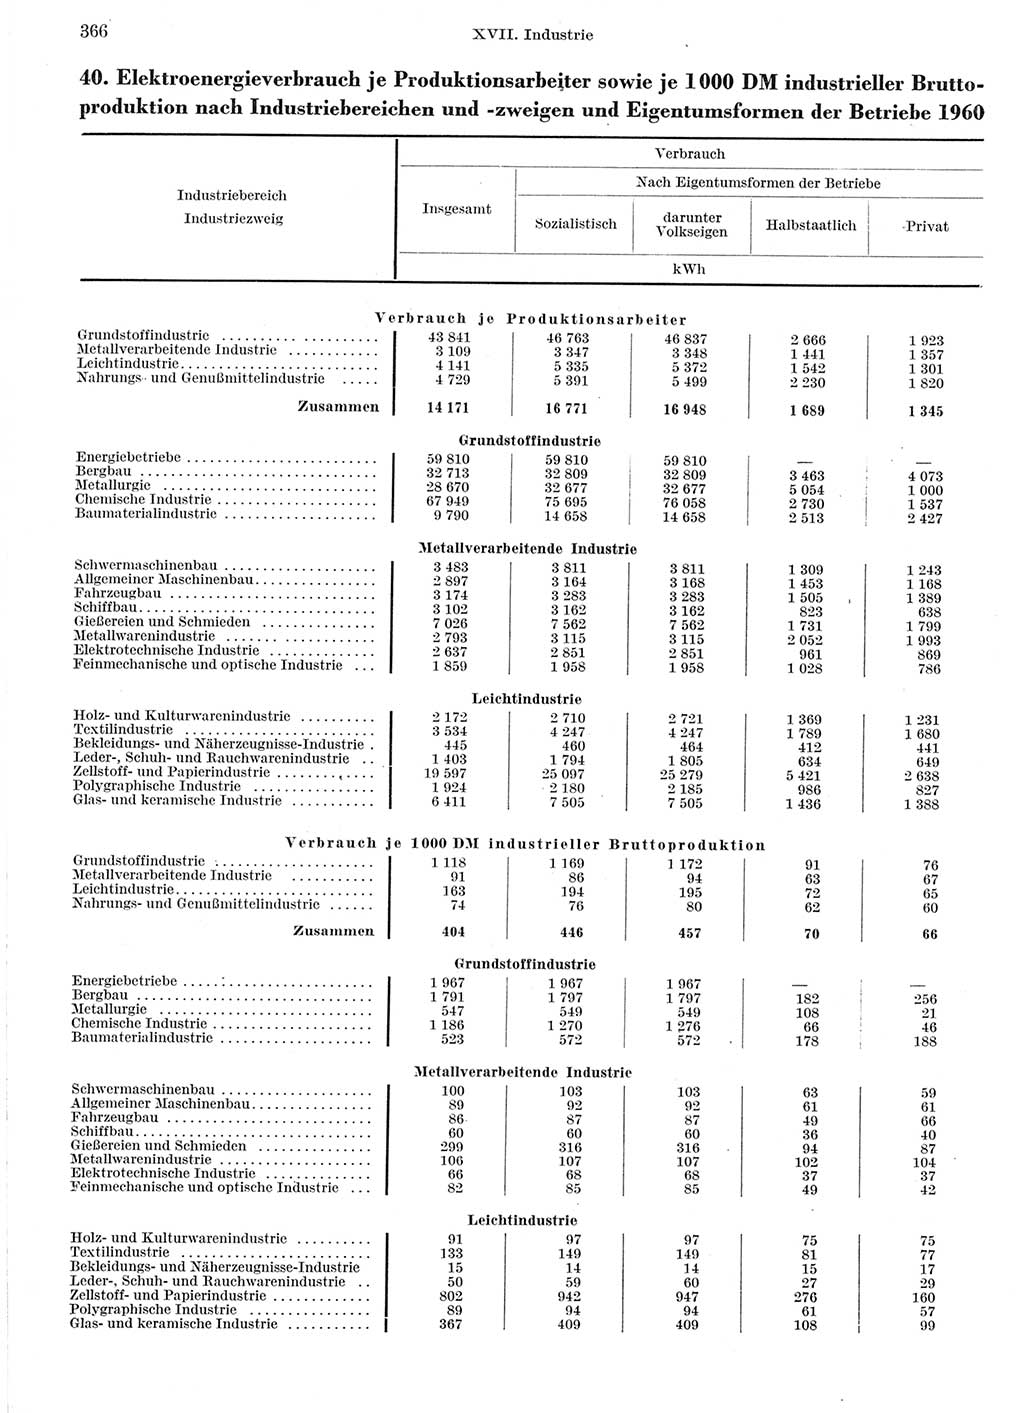 Statistisches Jahrbuch der Deutschen Demokratischen Republik (DDR) 1960-1961, Seite 366 (Stat. Jb. DDR 1960-1961, S. 366)